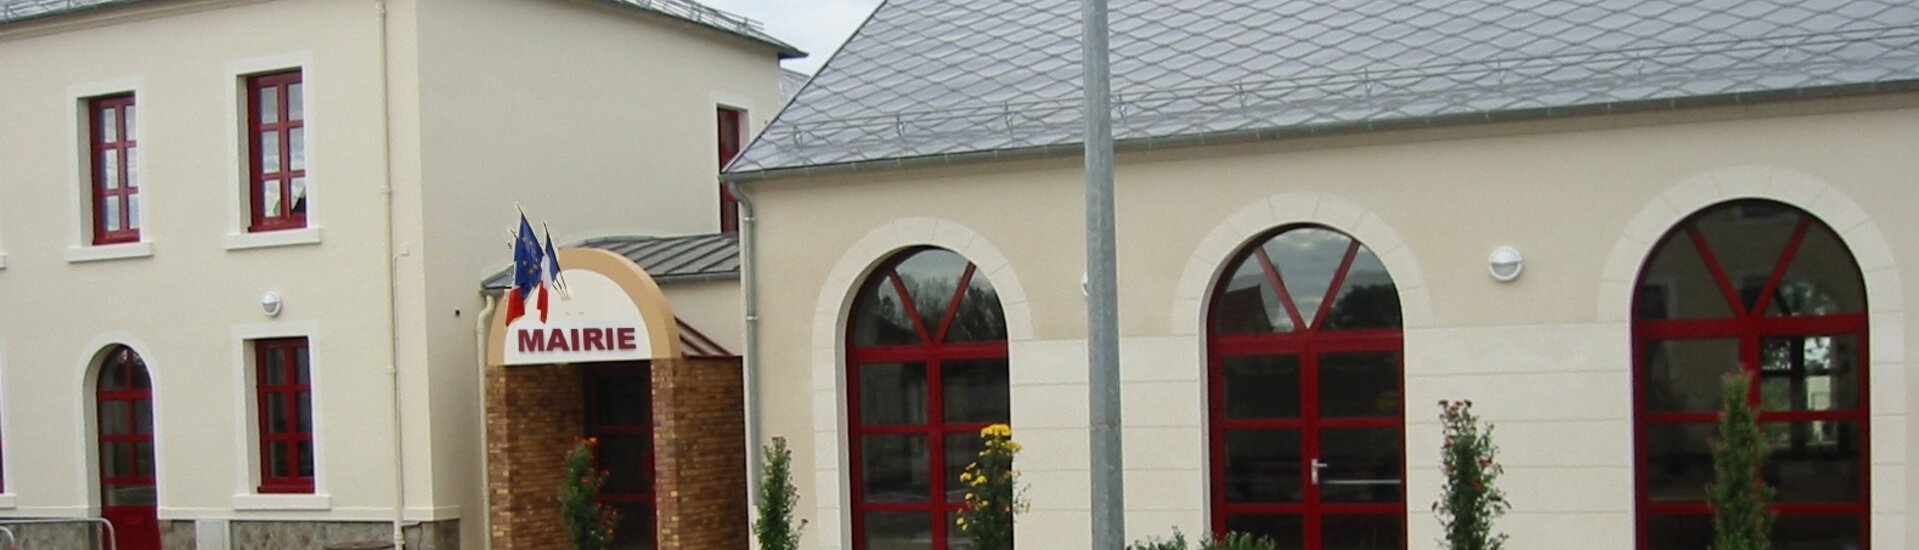 Mairie de Durdat-Larequille - Allier (03)